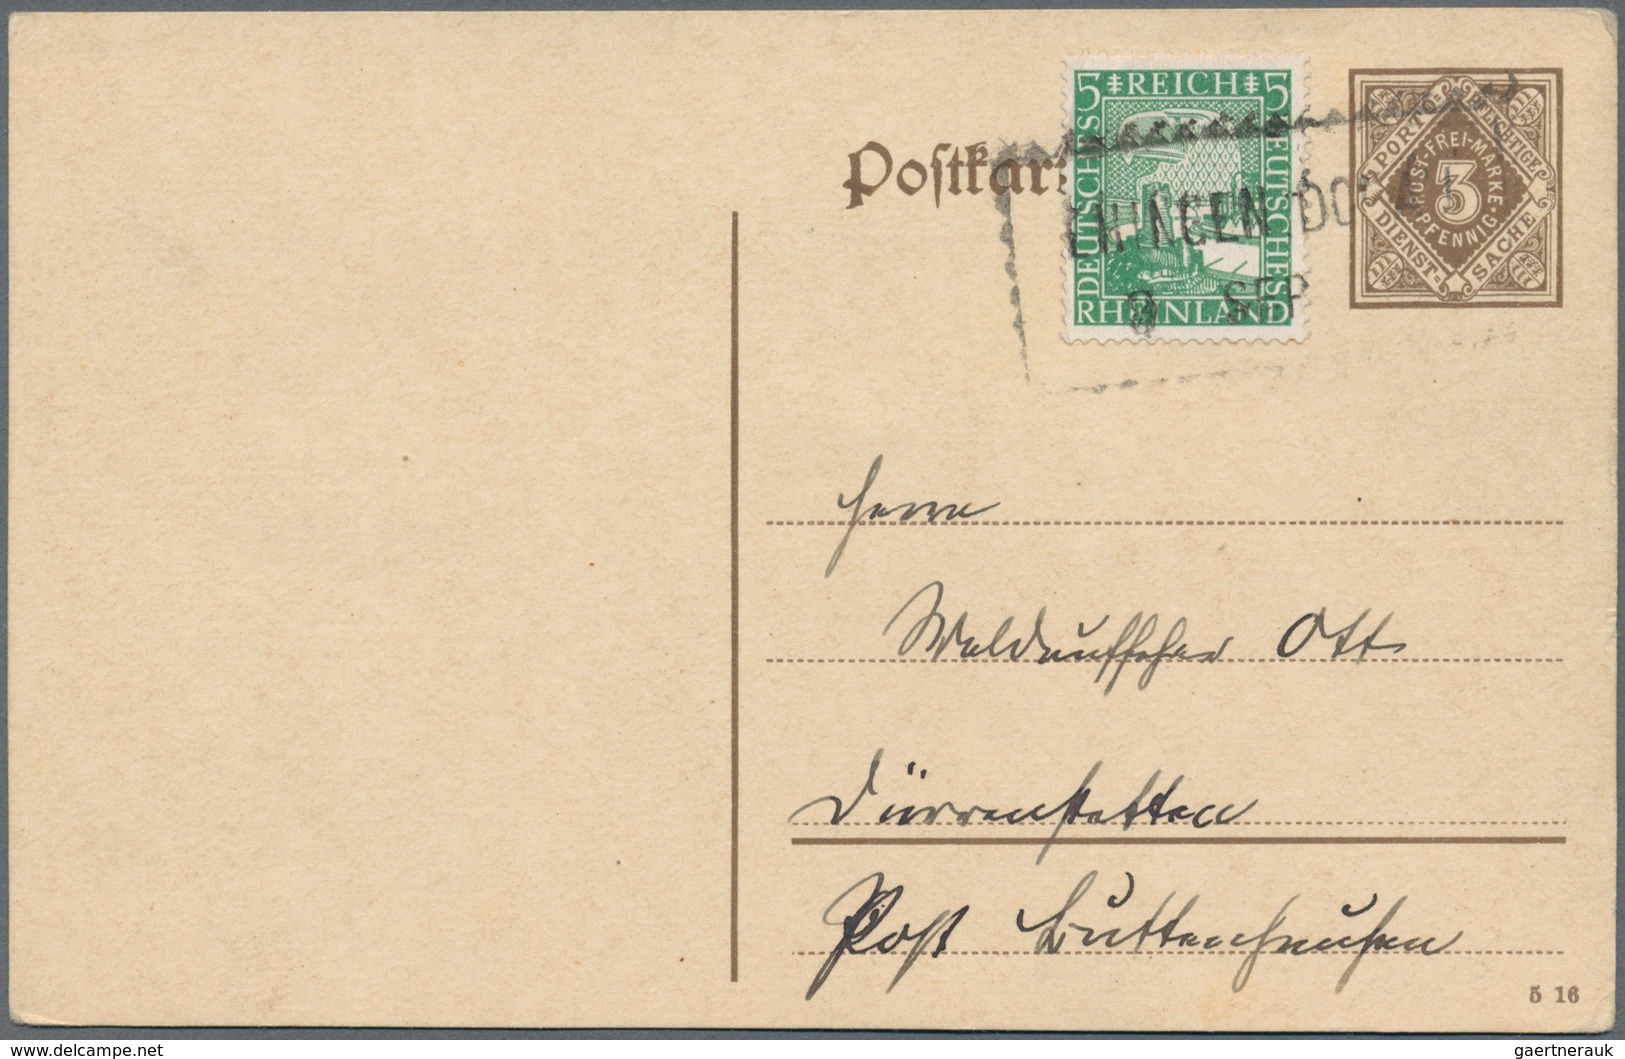 Württemberg - Marken und Briefe: 1875-1923, tolle Sammlung von ca. 290 Belegen mit interessanten Fra